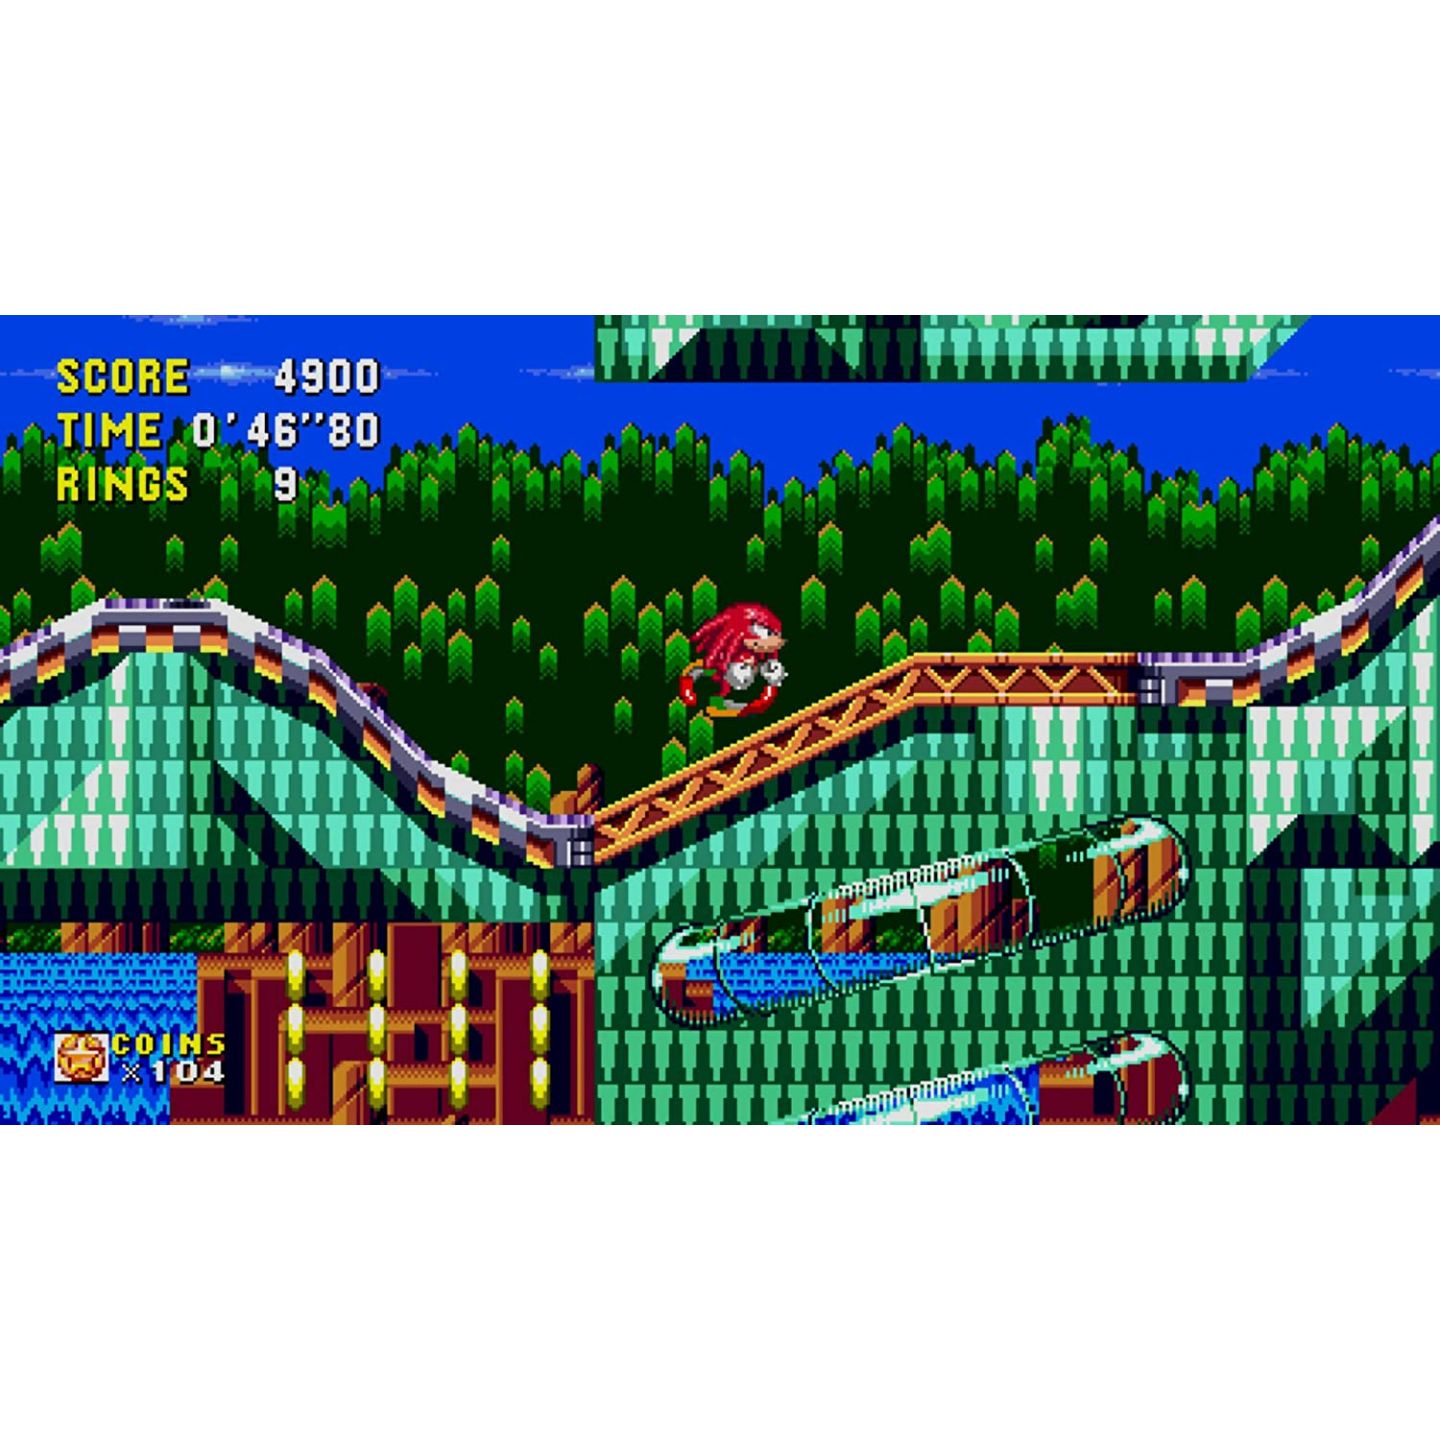 Sonic Origins Plus Impressions: Pico Pico Retro